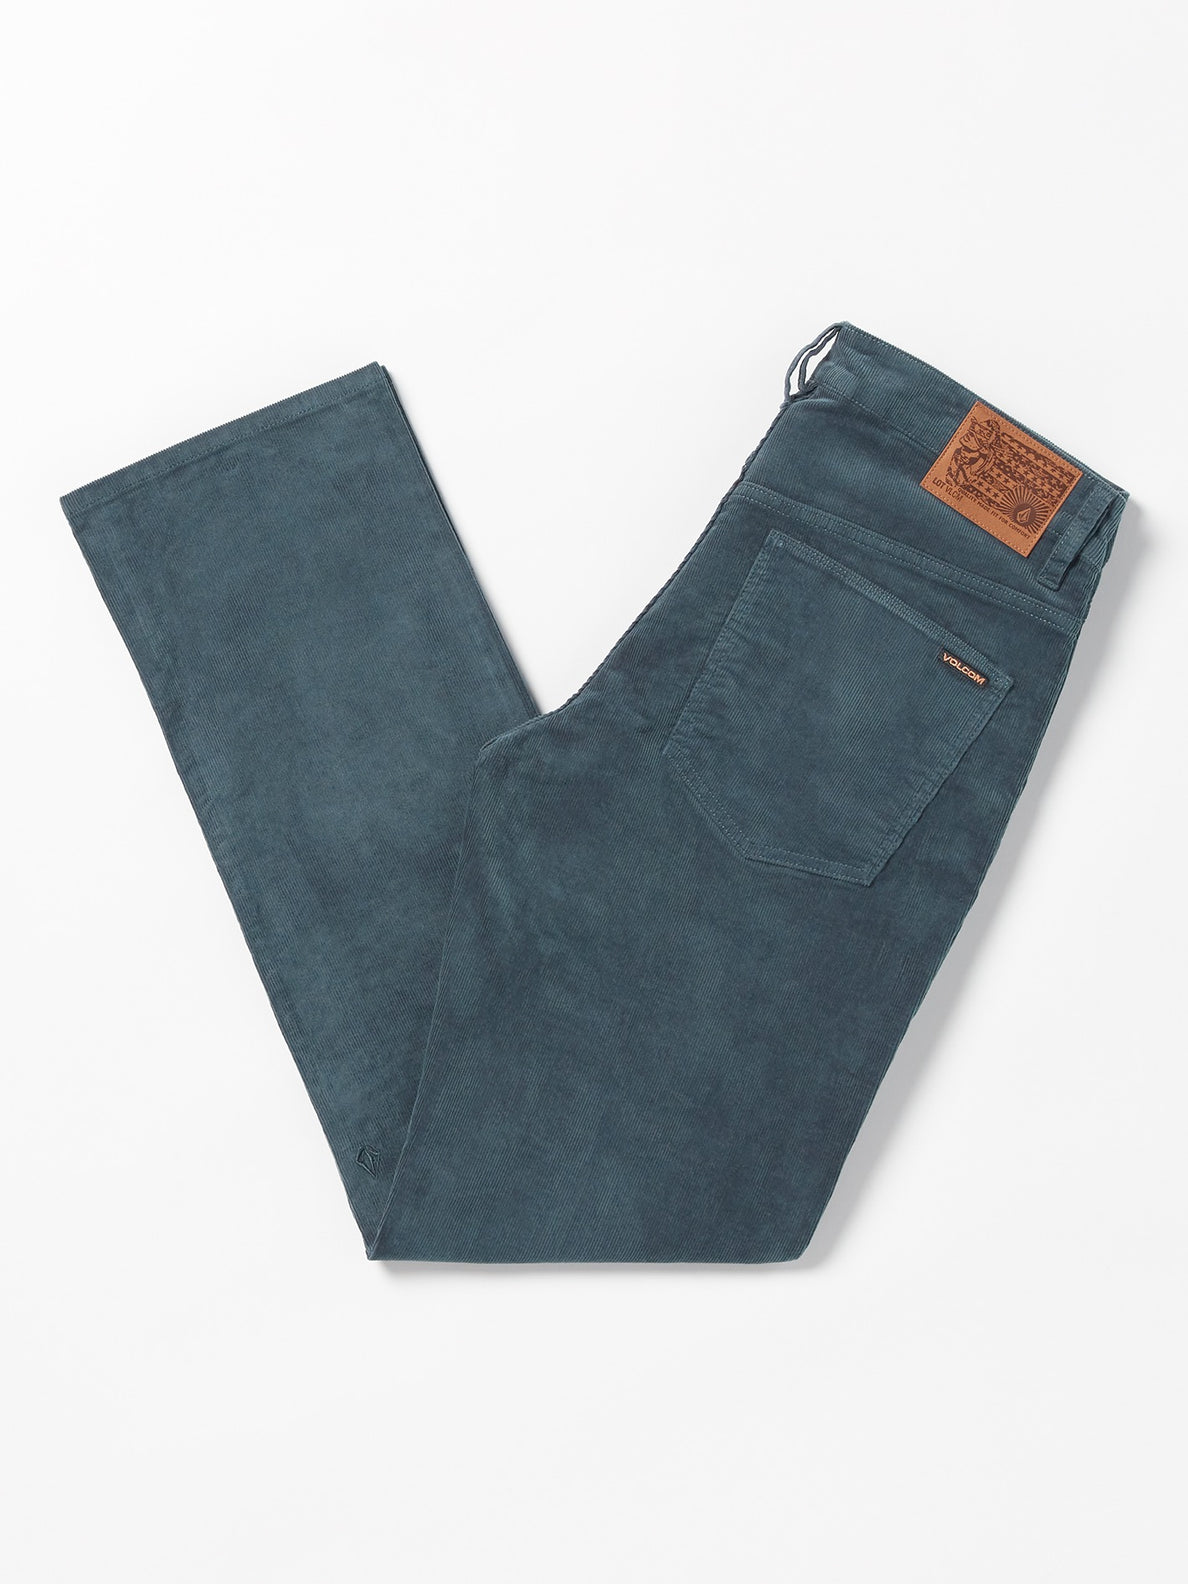 Solver 5 Pocket Cord Pants - Dark Slate